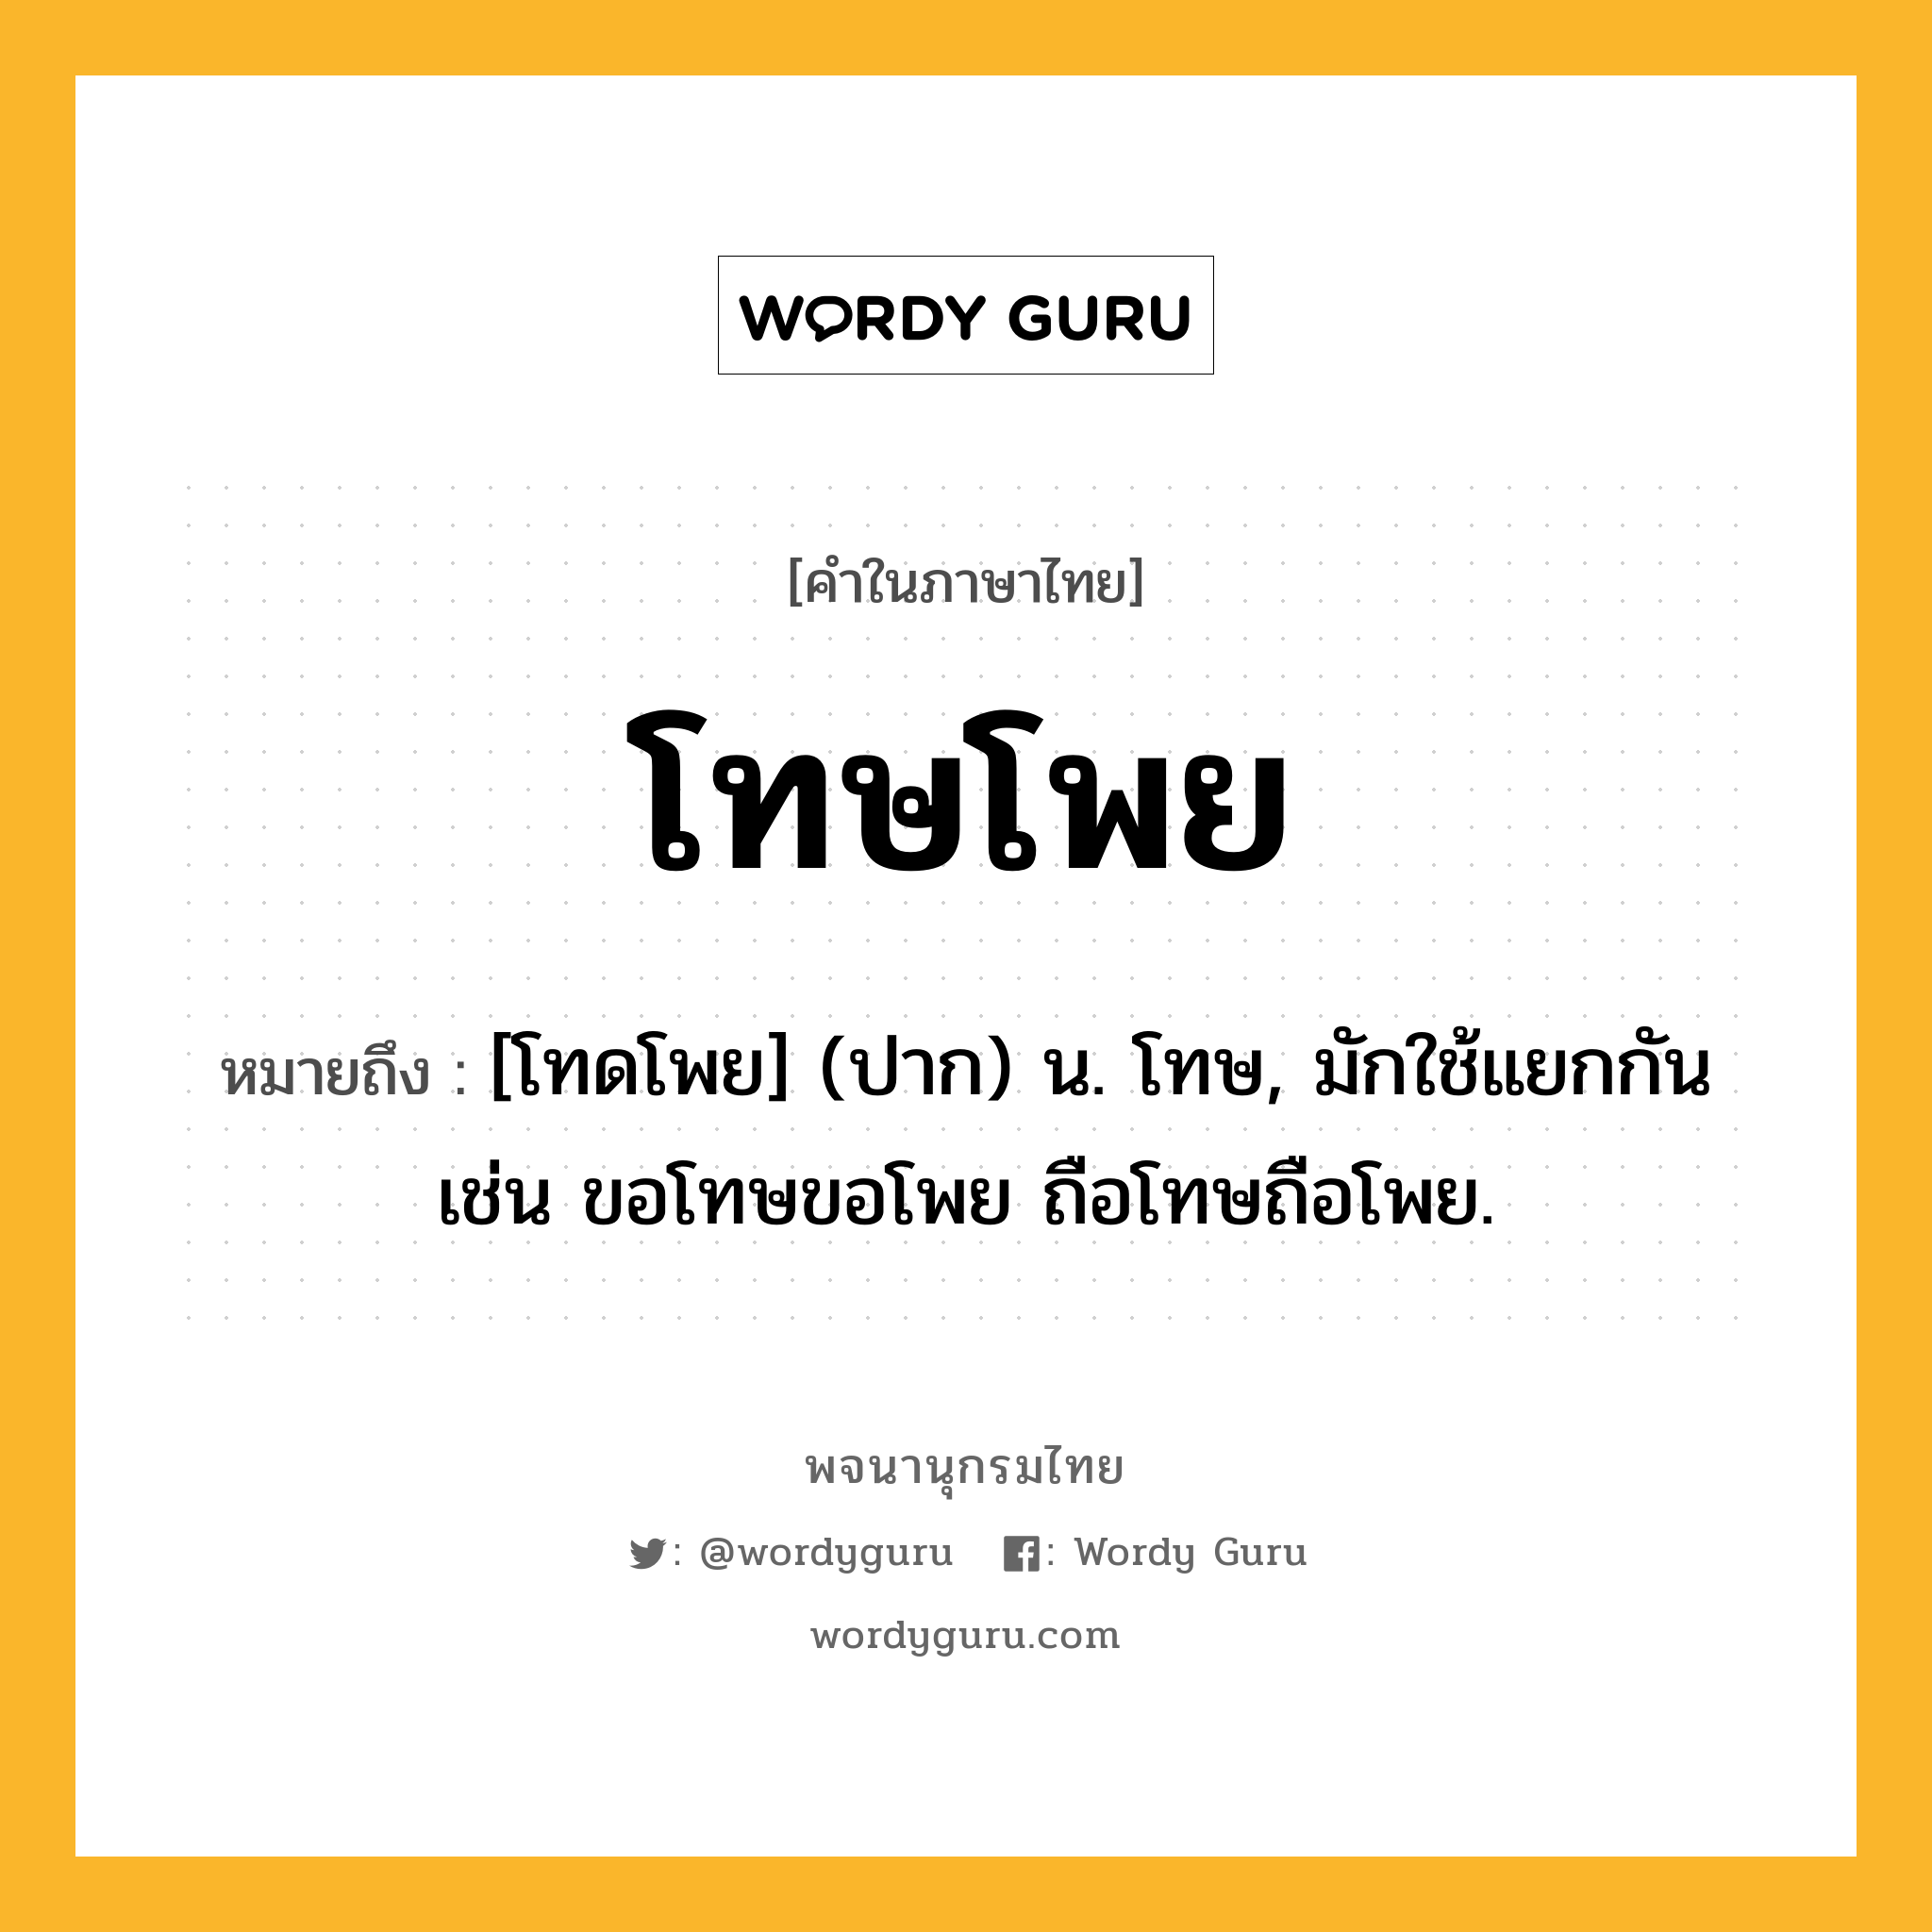 โทษโพย หมายถึงอะไร?, คำในภาษาไทย โทษโพย หมายถึง [โทดโพย] (ปาก) น. โทษ, มักใช้แยกกัน เช่น ขอโทษขอโพย ถือโทษถือโพย.